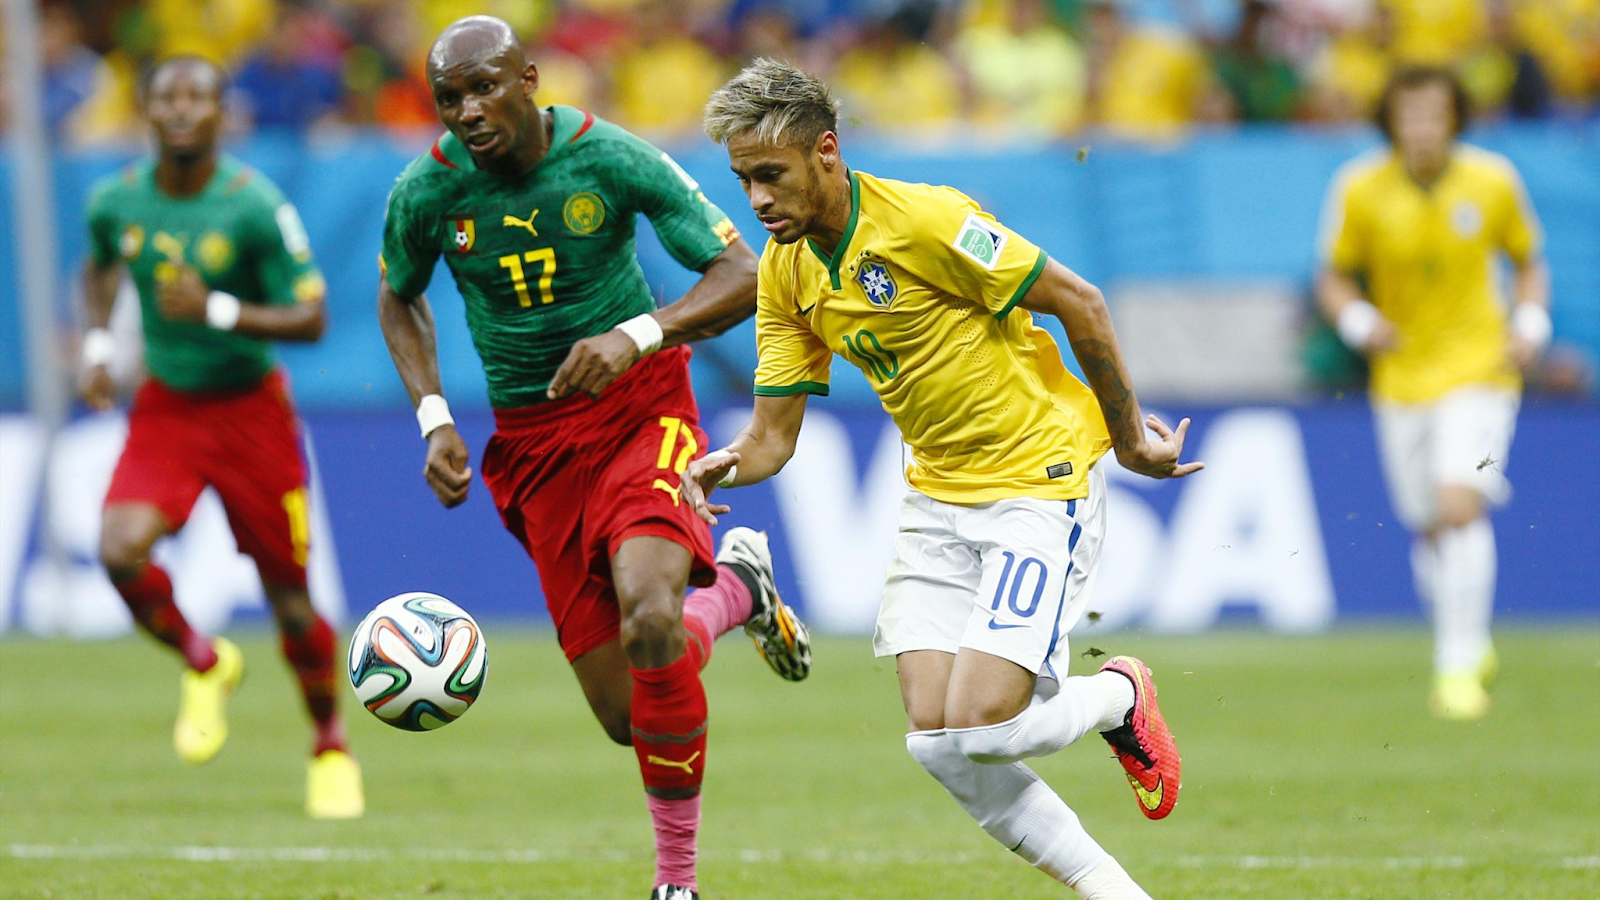 Dự đoán kết quả soi kèo giữa Cameroon vs Brasil từ chuyên gia